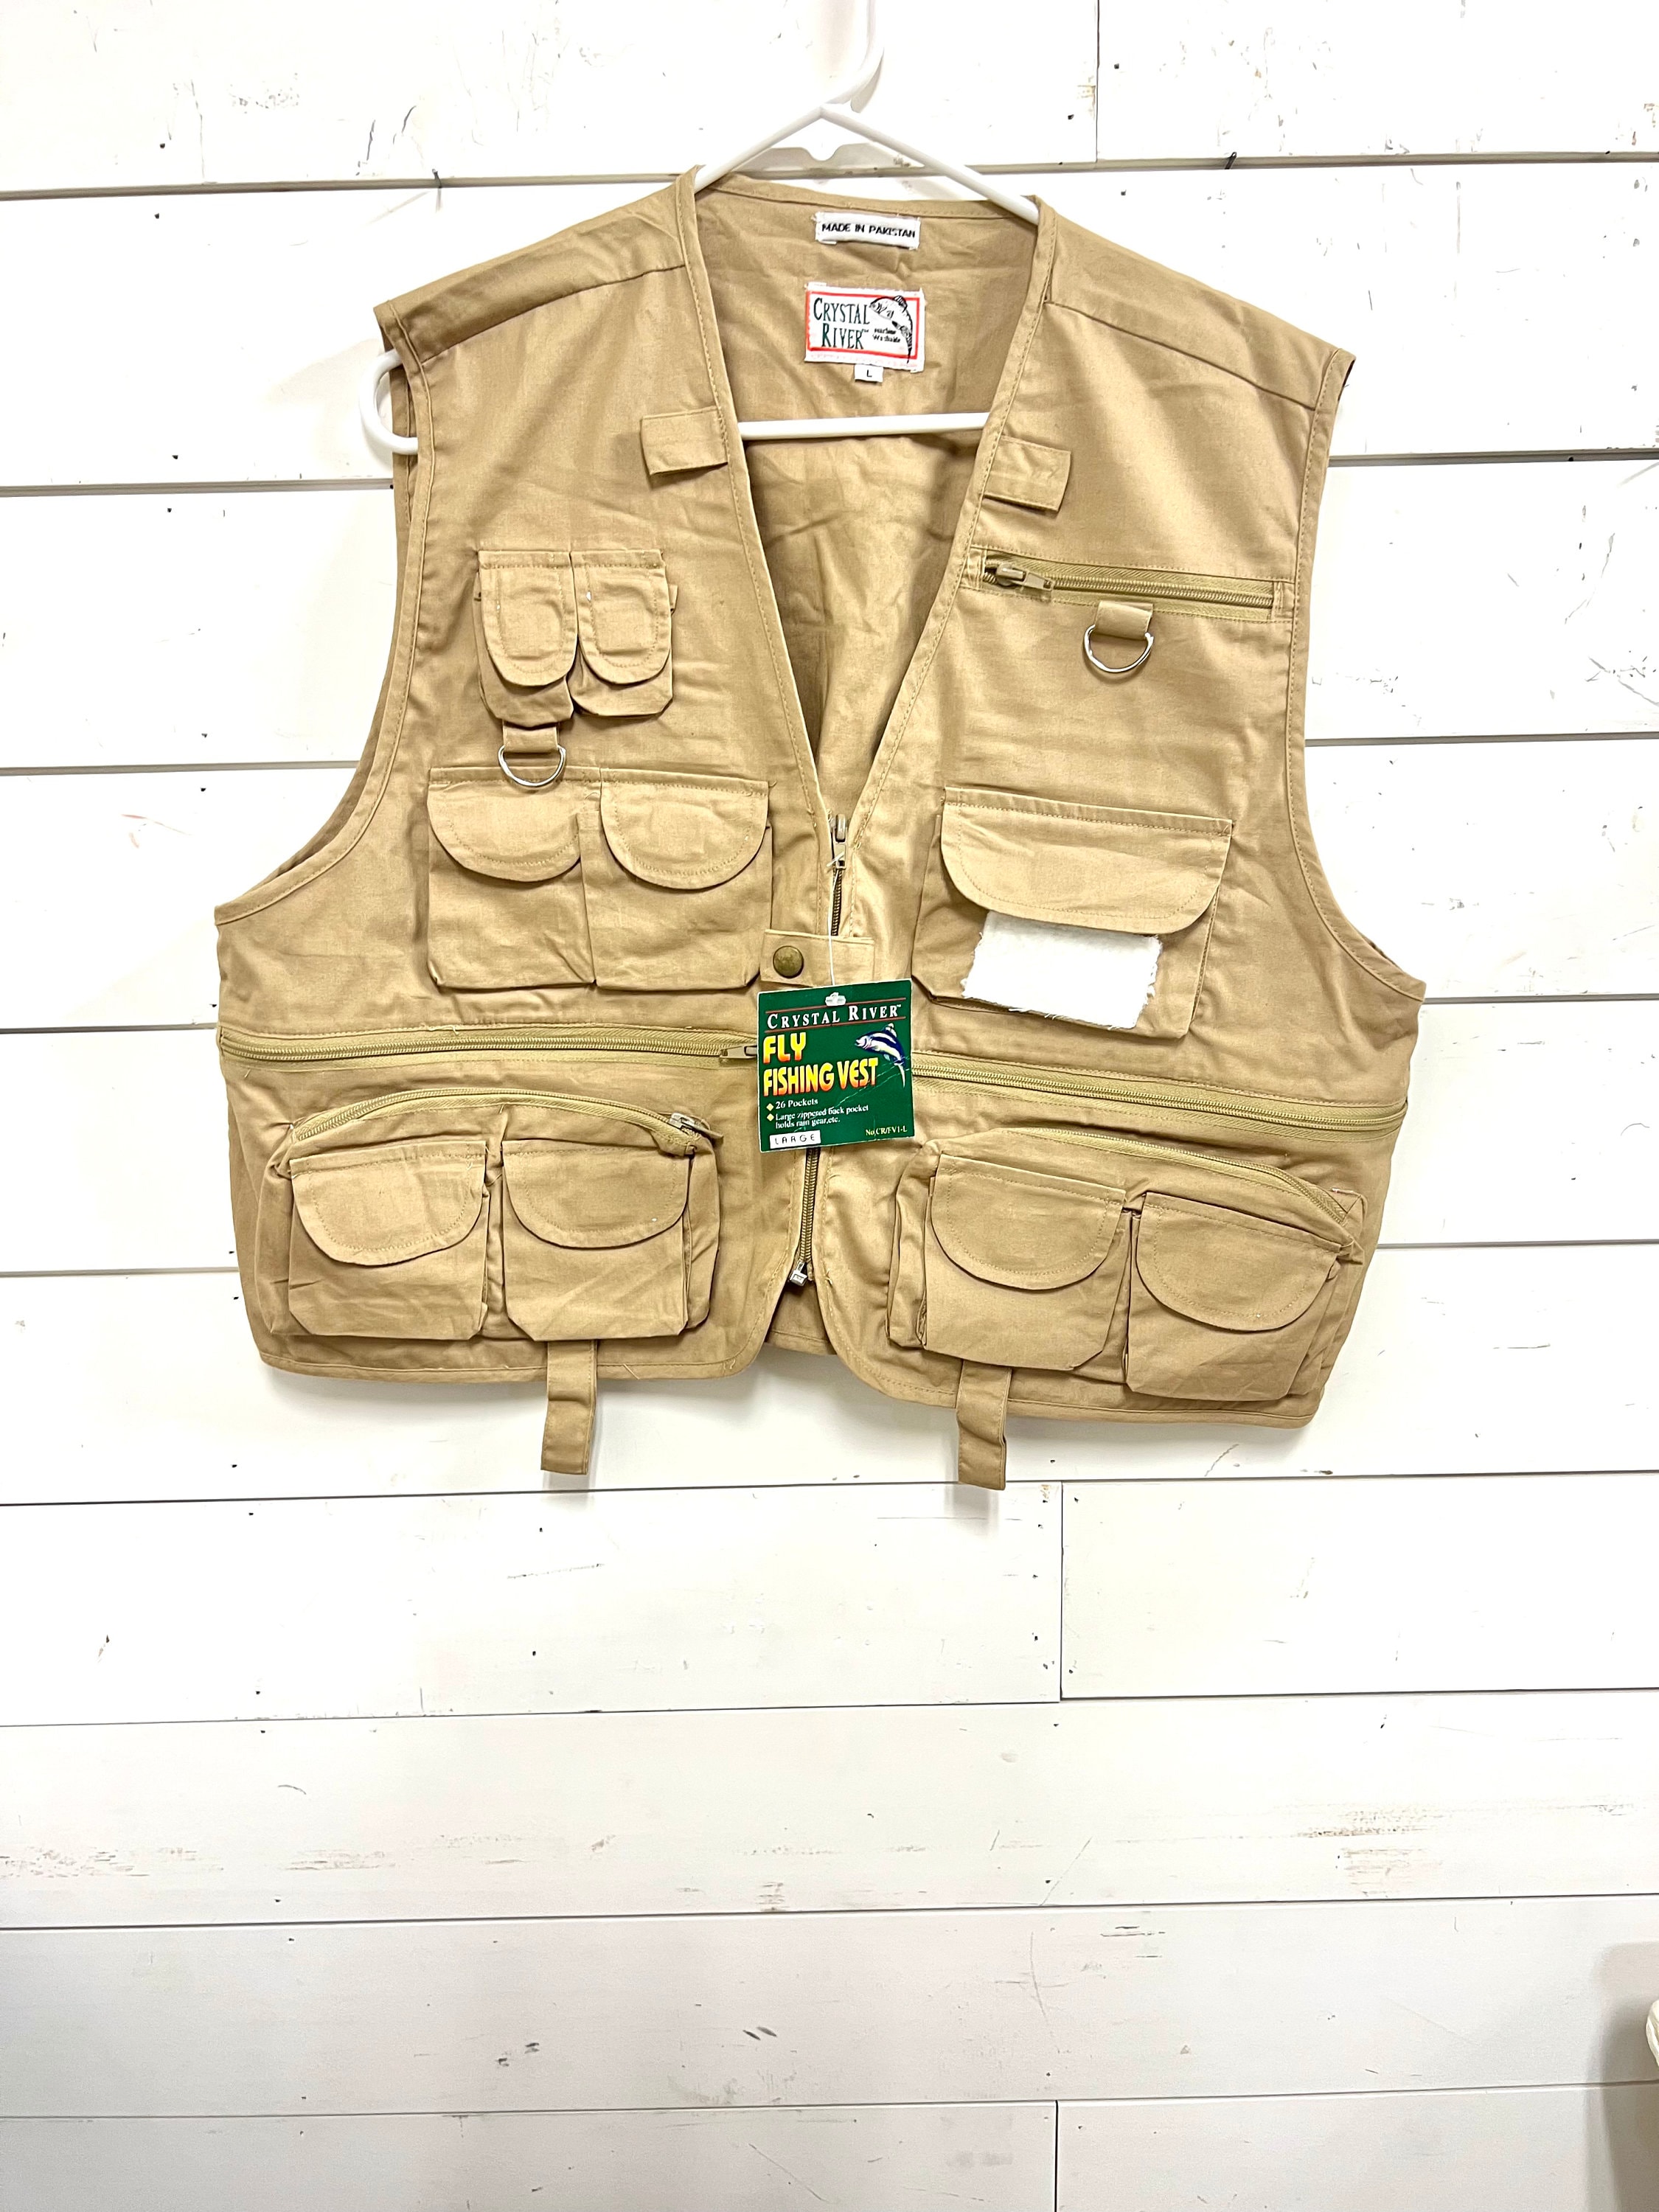 Field & Stream Fly Fishing Vest Men's Size Large Khaki Beige